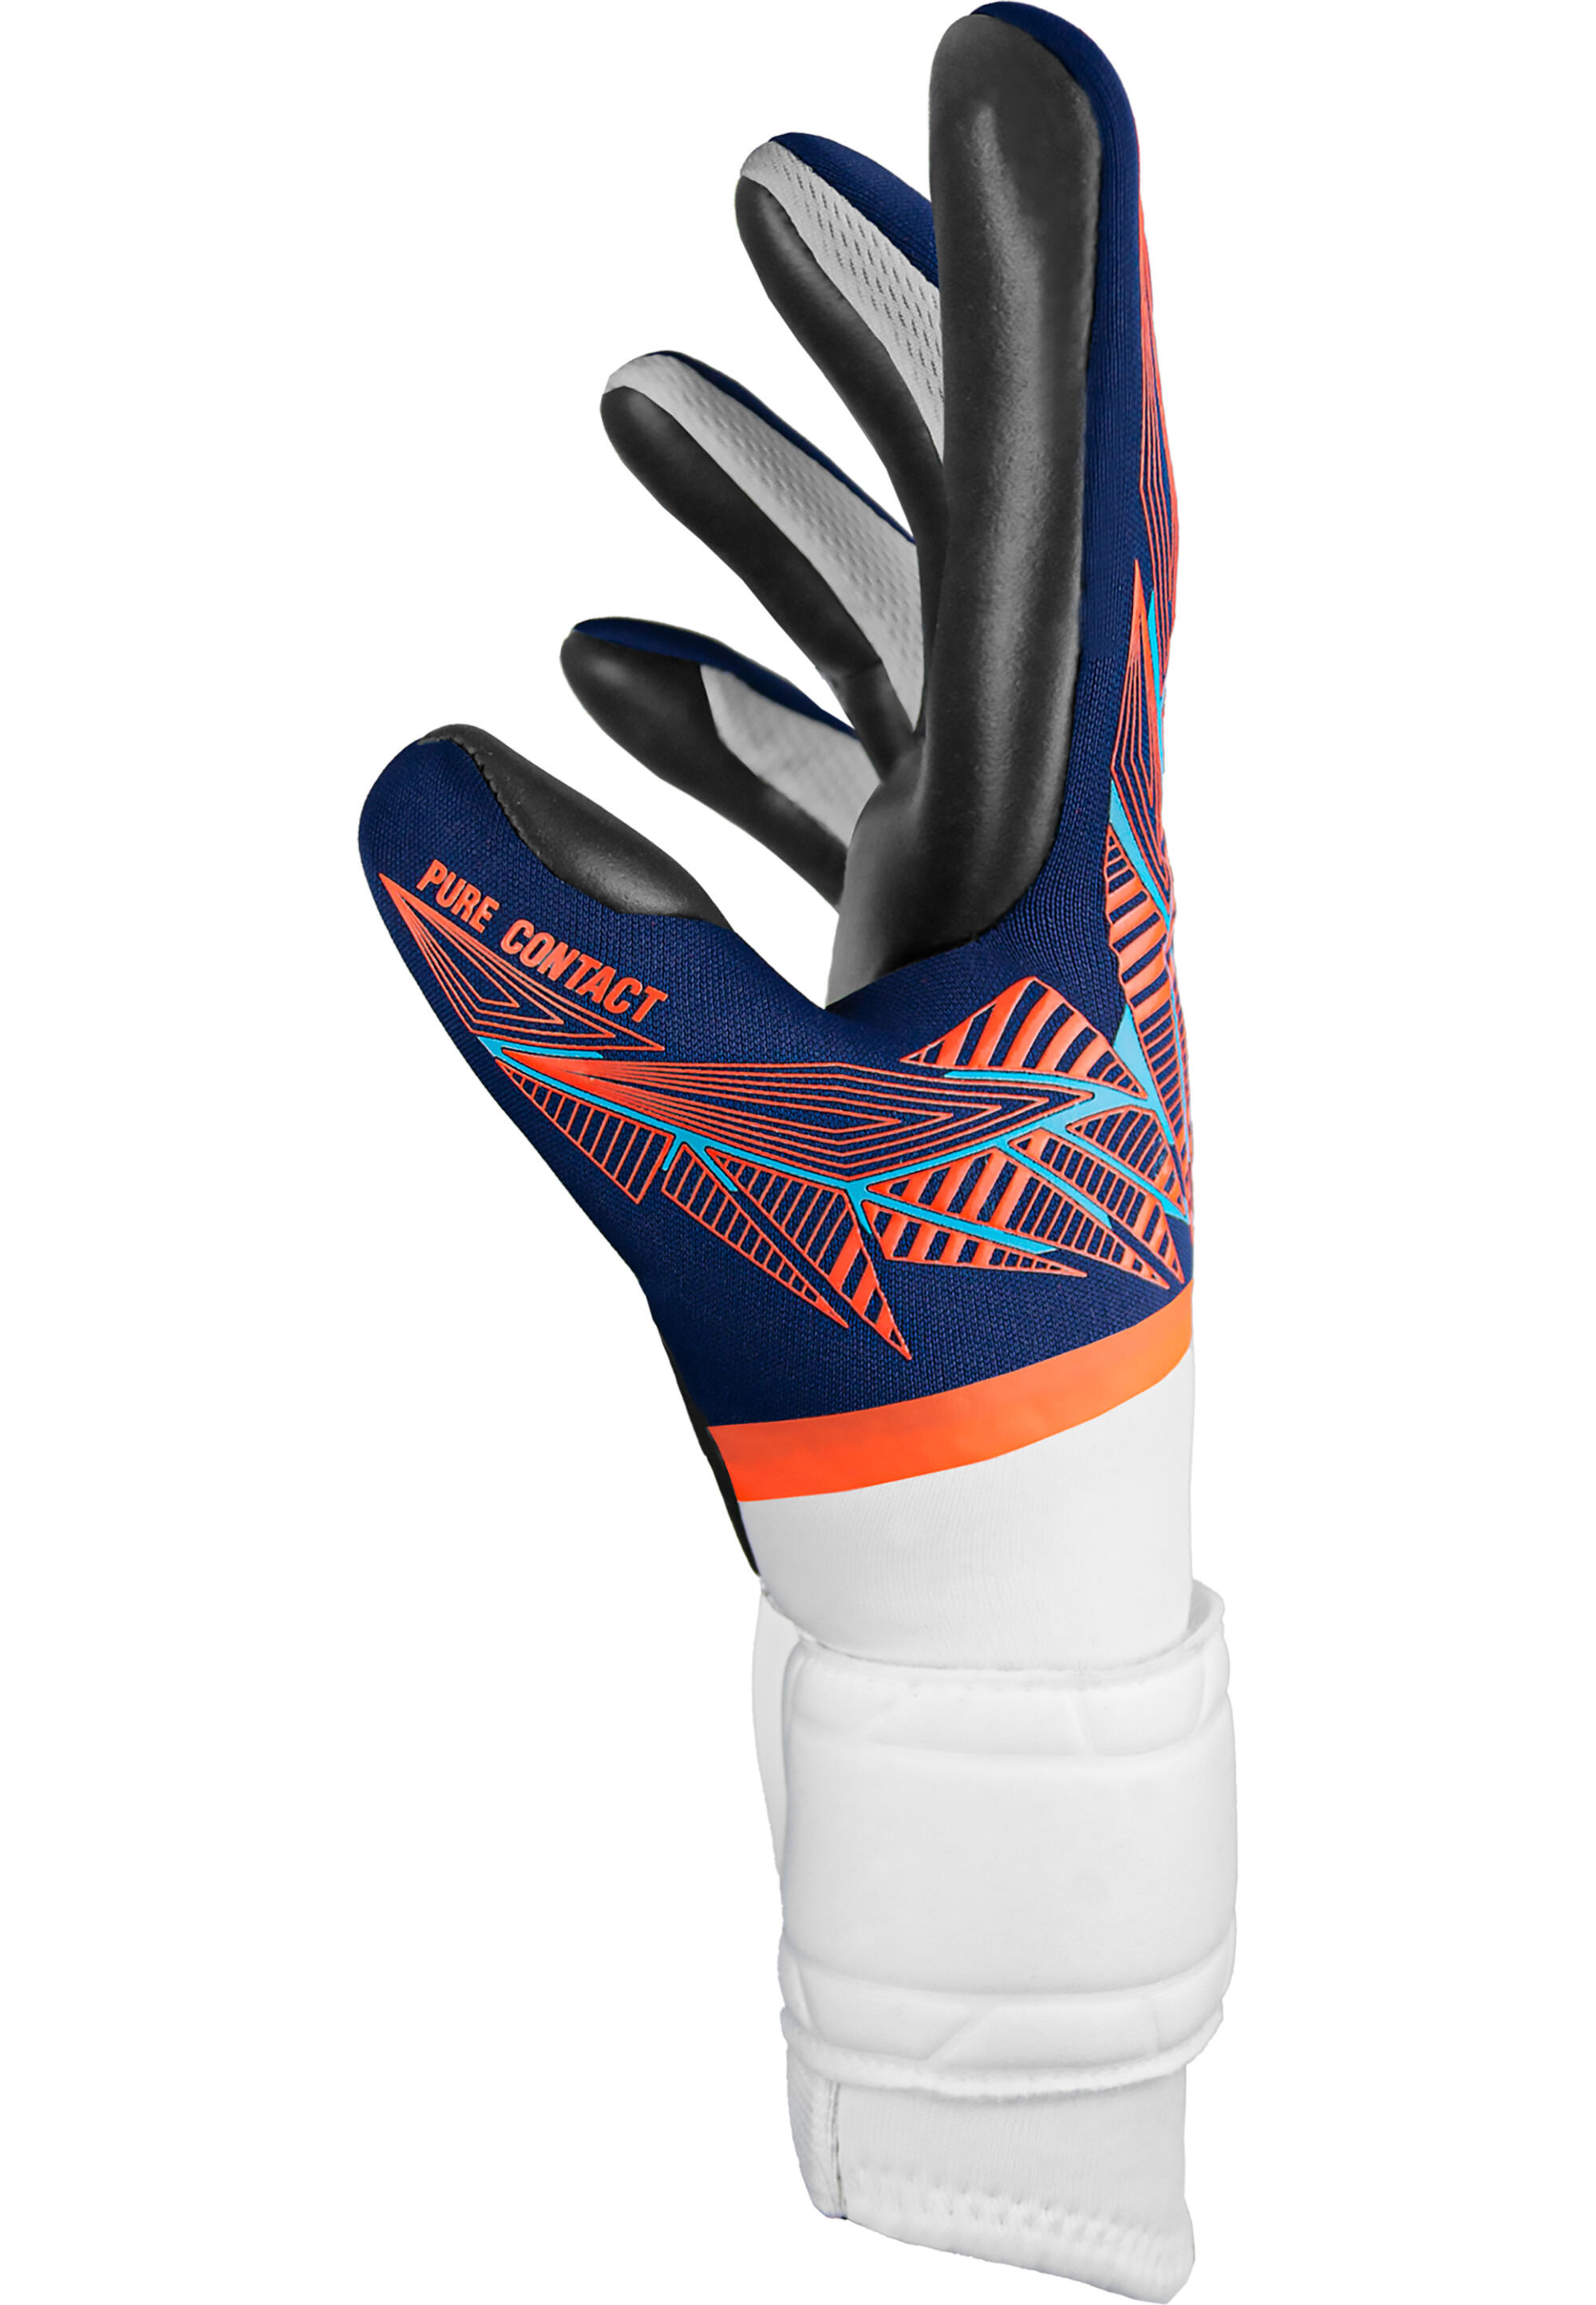 Reusch Pure Contact Gold Junior Goalkeeper Gloves 3/7